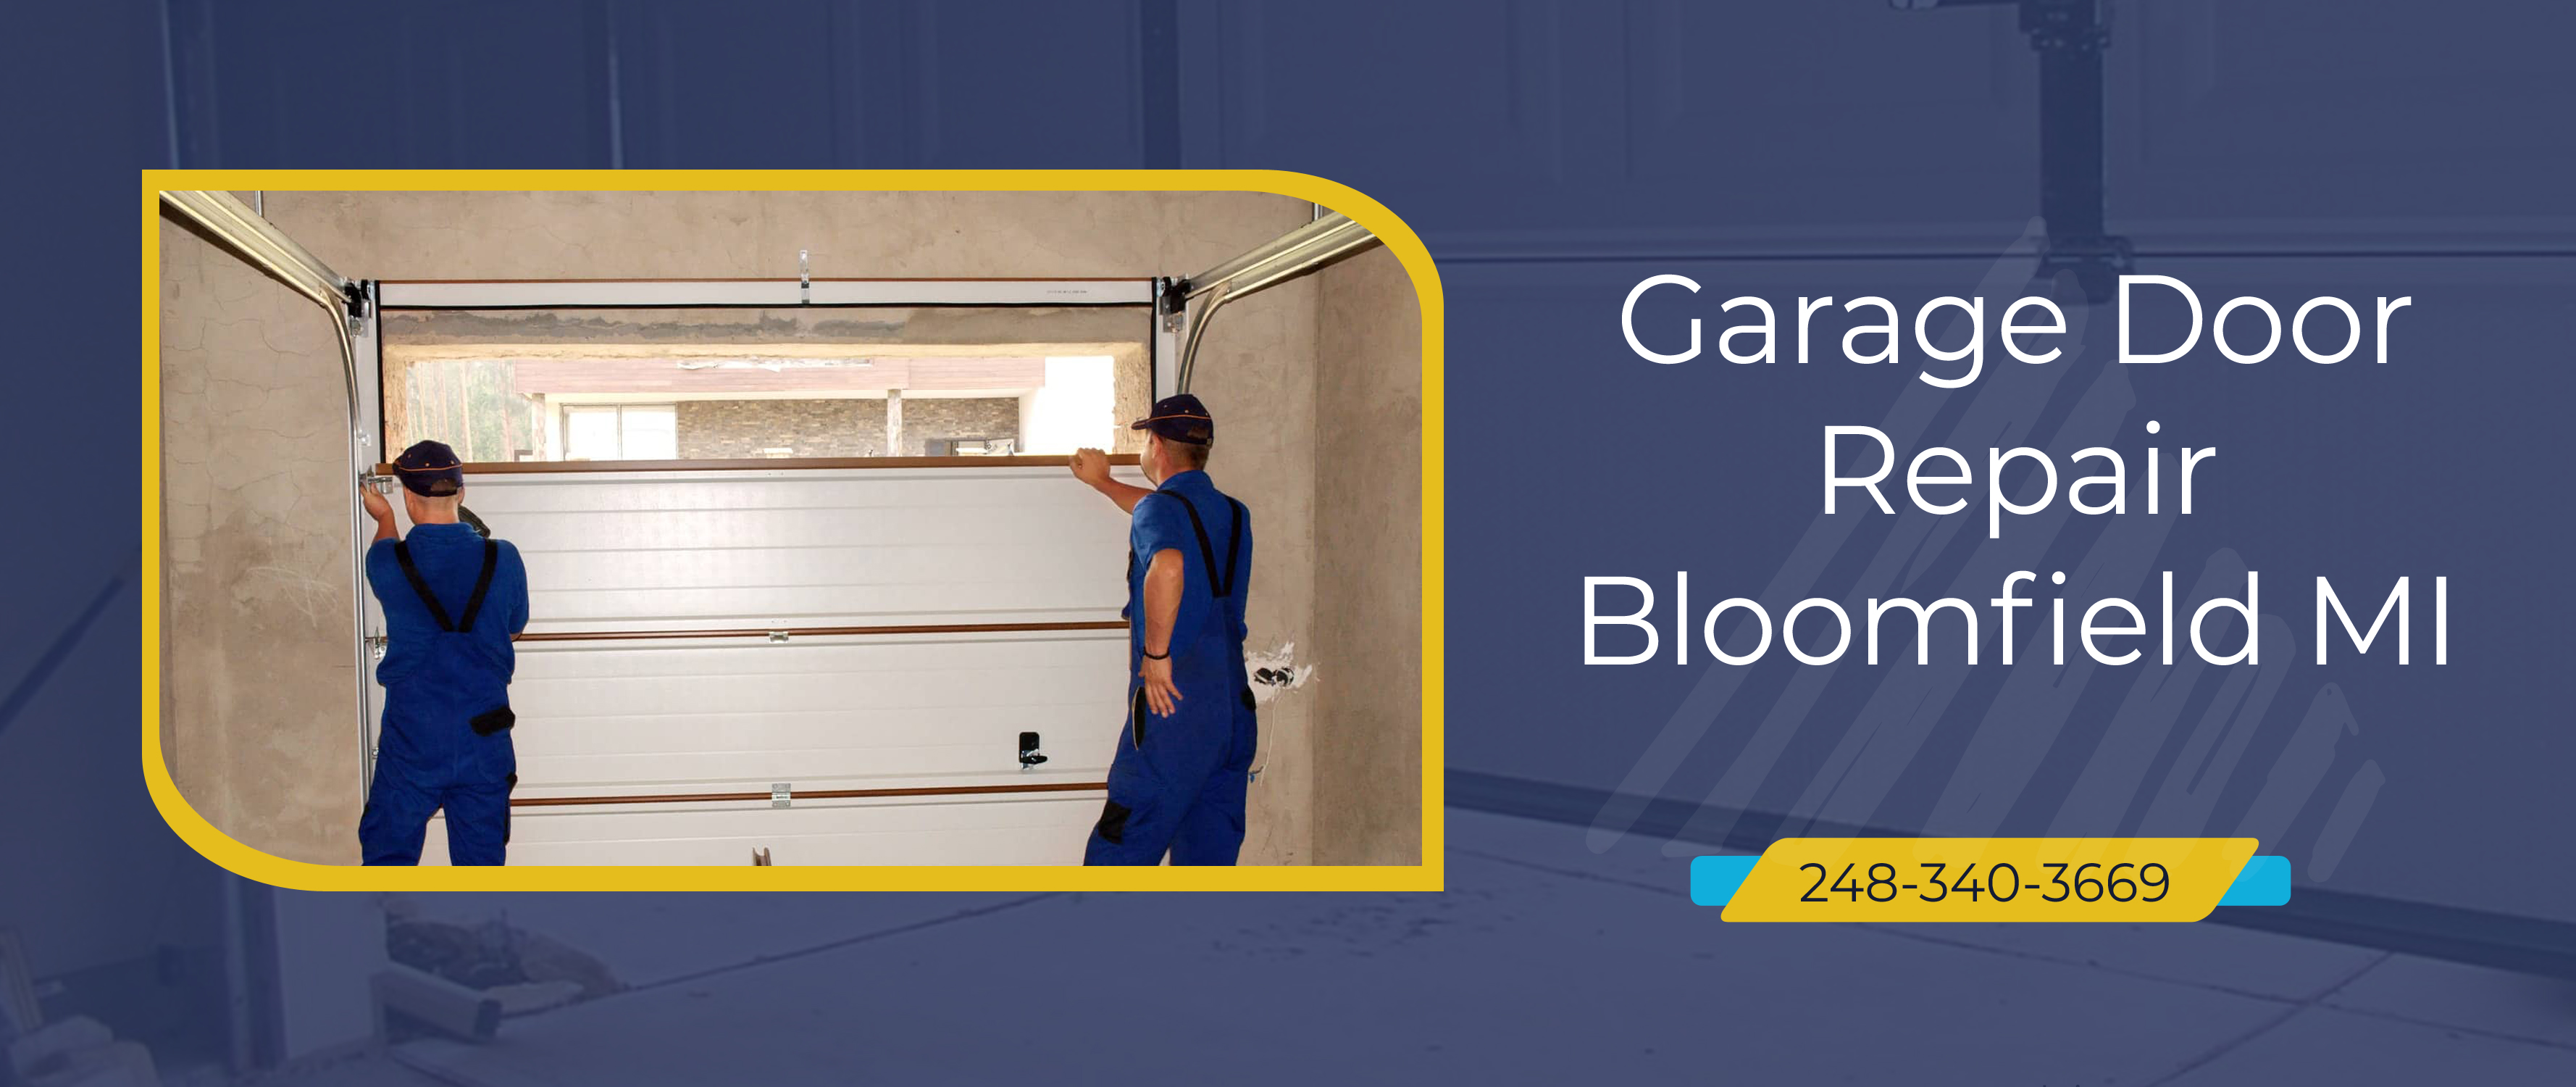 Garage Door Repair Bloomfield MI : Install Overhead Opener